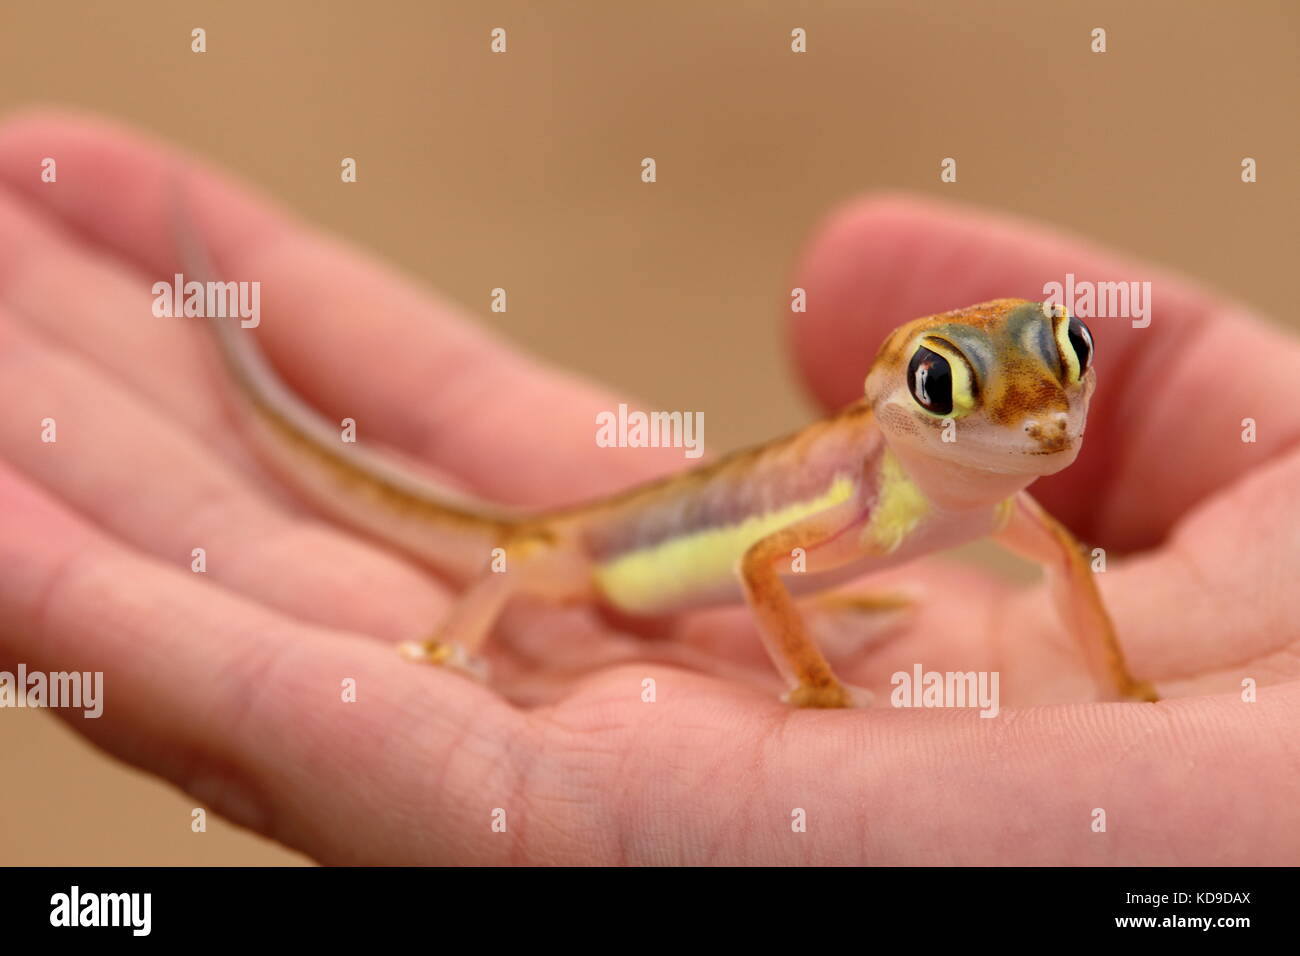 Pachydactylus rangei (palmatogecko), également connu sous le nom de web-aux pieds, un gecko gecko nocturne endémique dans le désert du namib. Banque D'Images